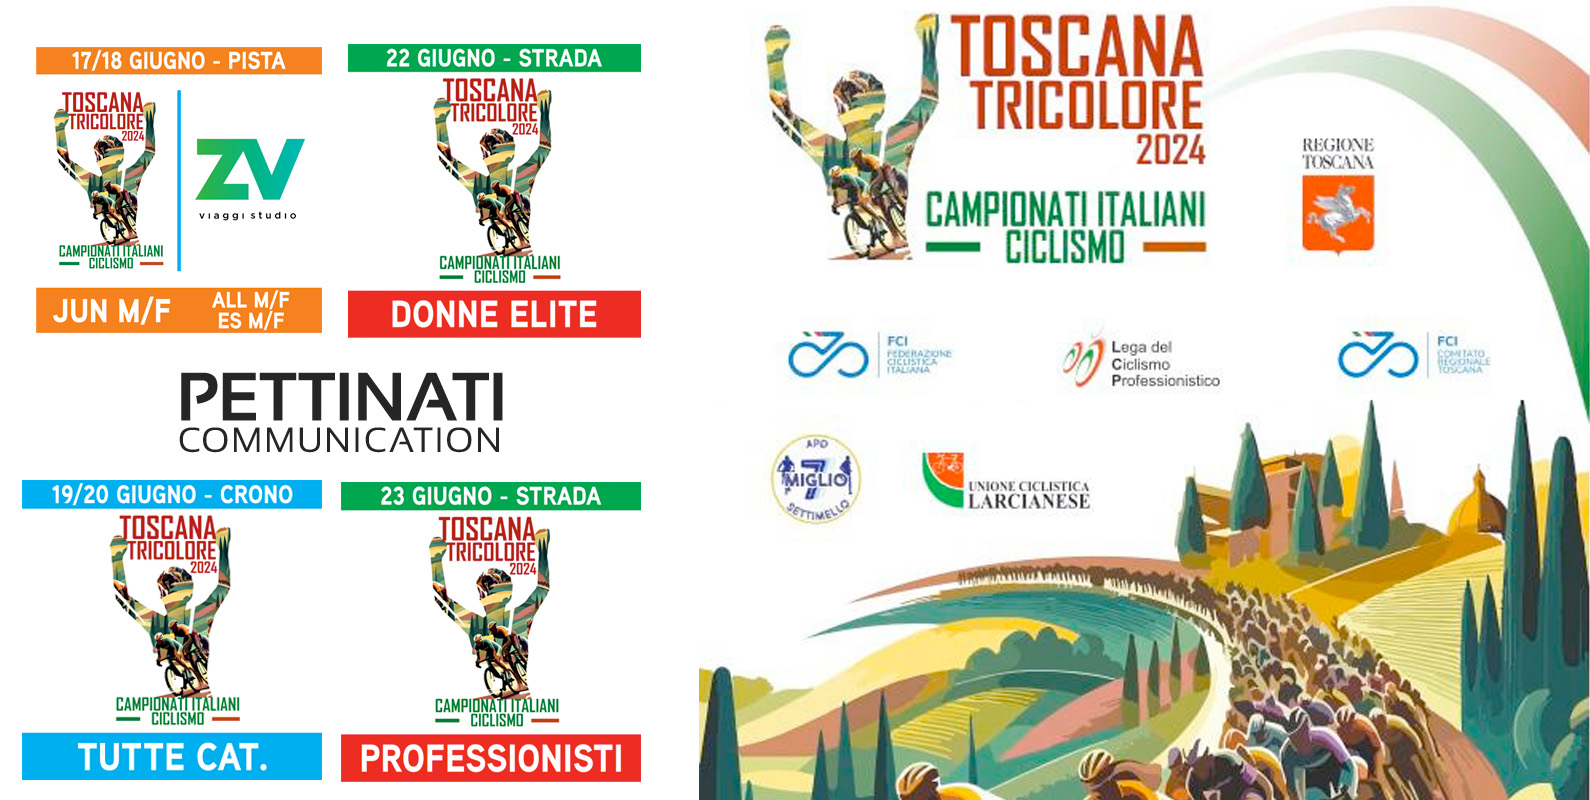 Toscana Tricolore, Valter Pettinati accreditato ai Campionati Italiani di Ciclismo